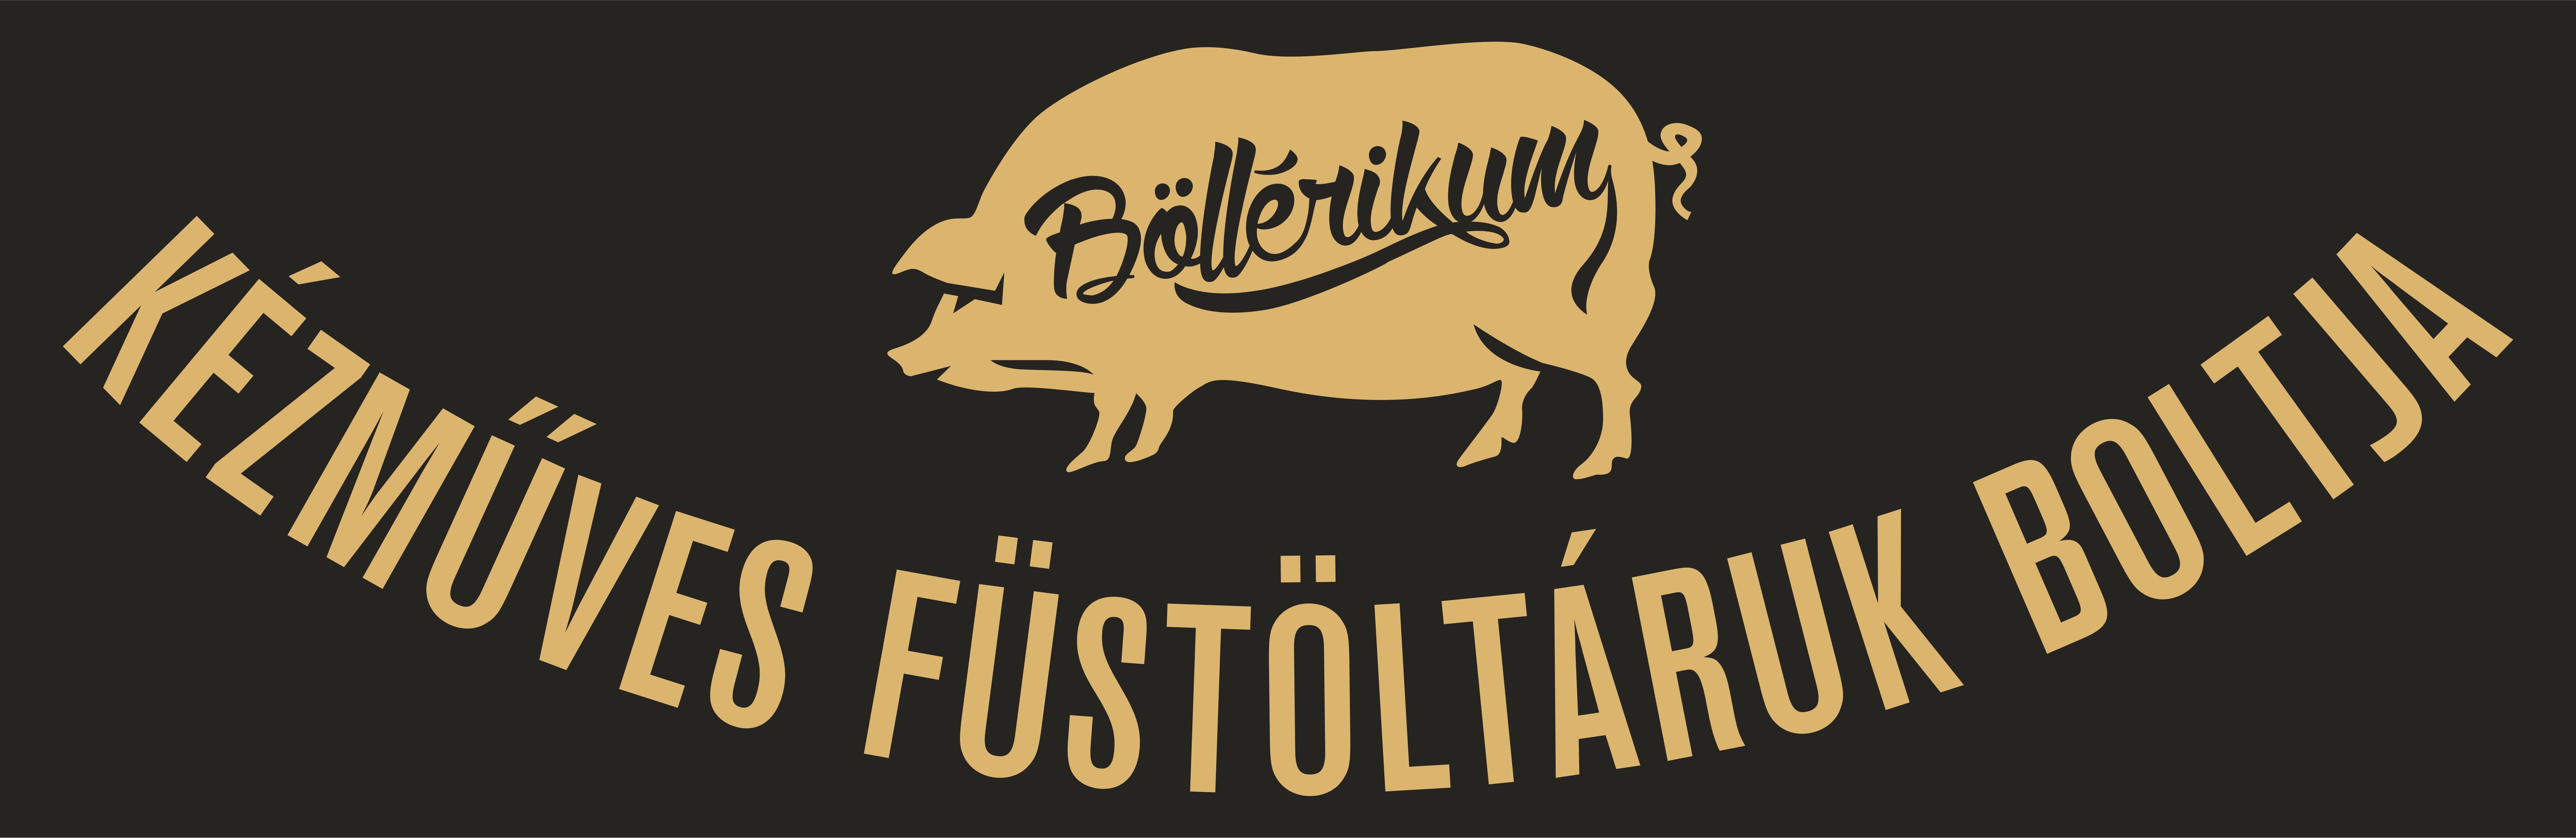 Böllérikum logo.jpg